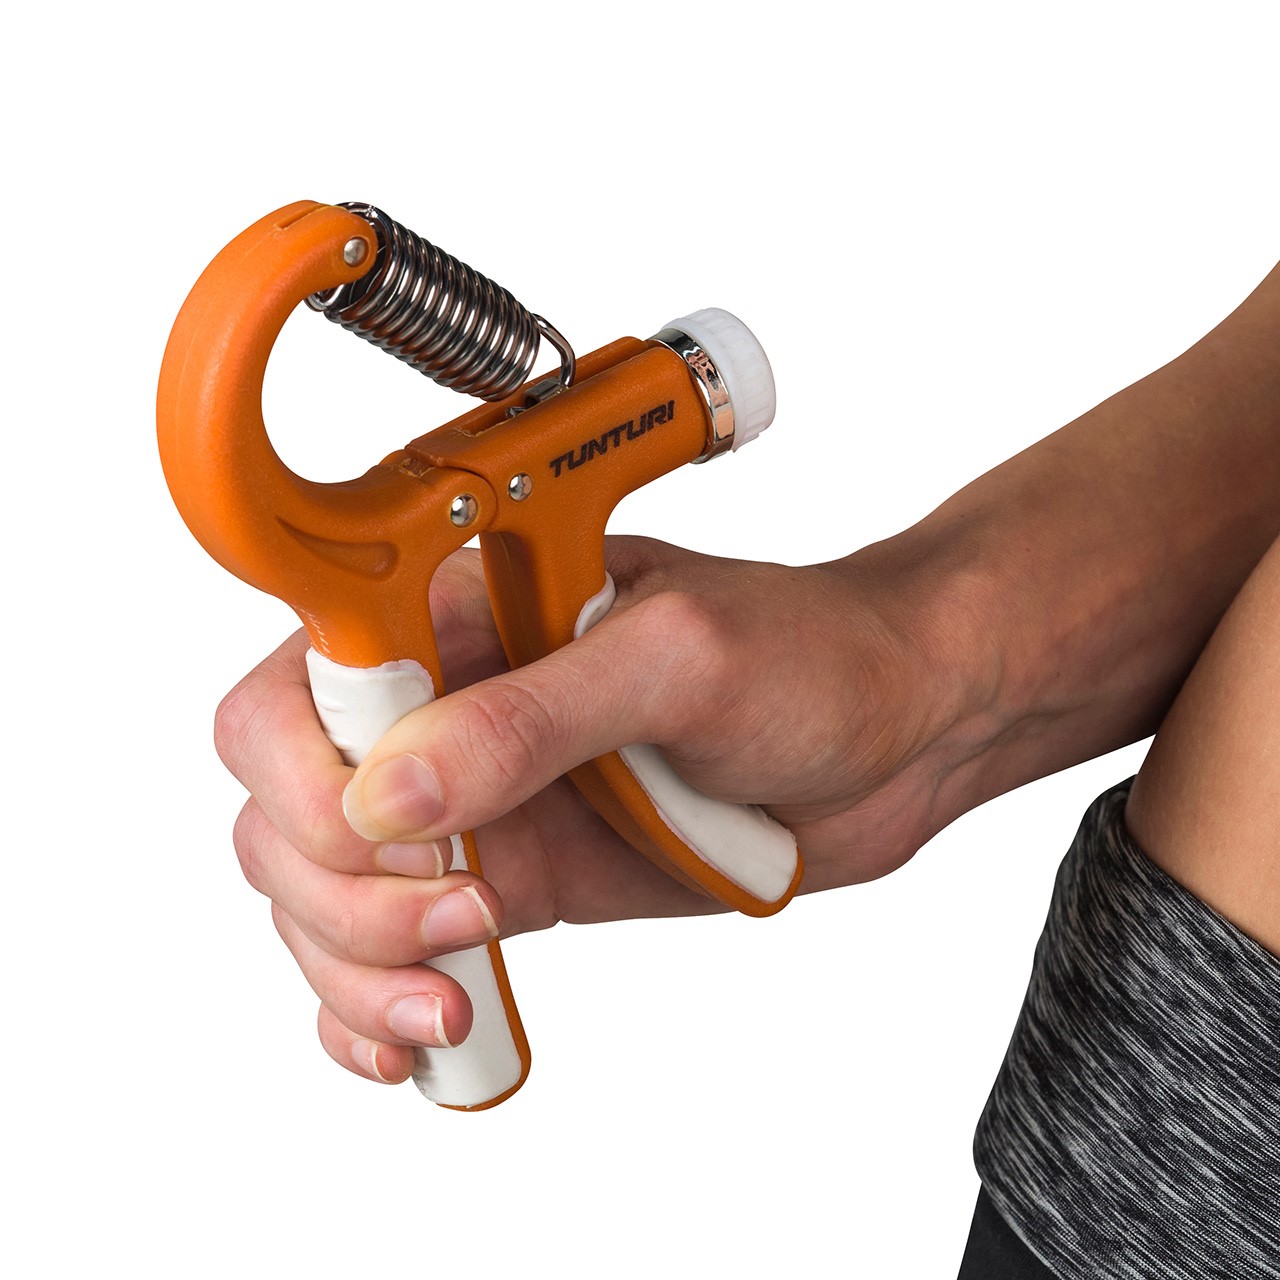 Adjustable Tunturi Handgrip Hand Trainer